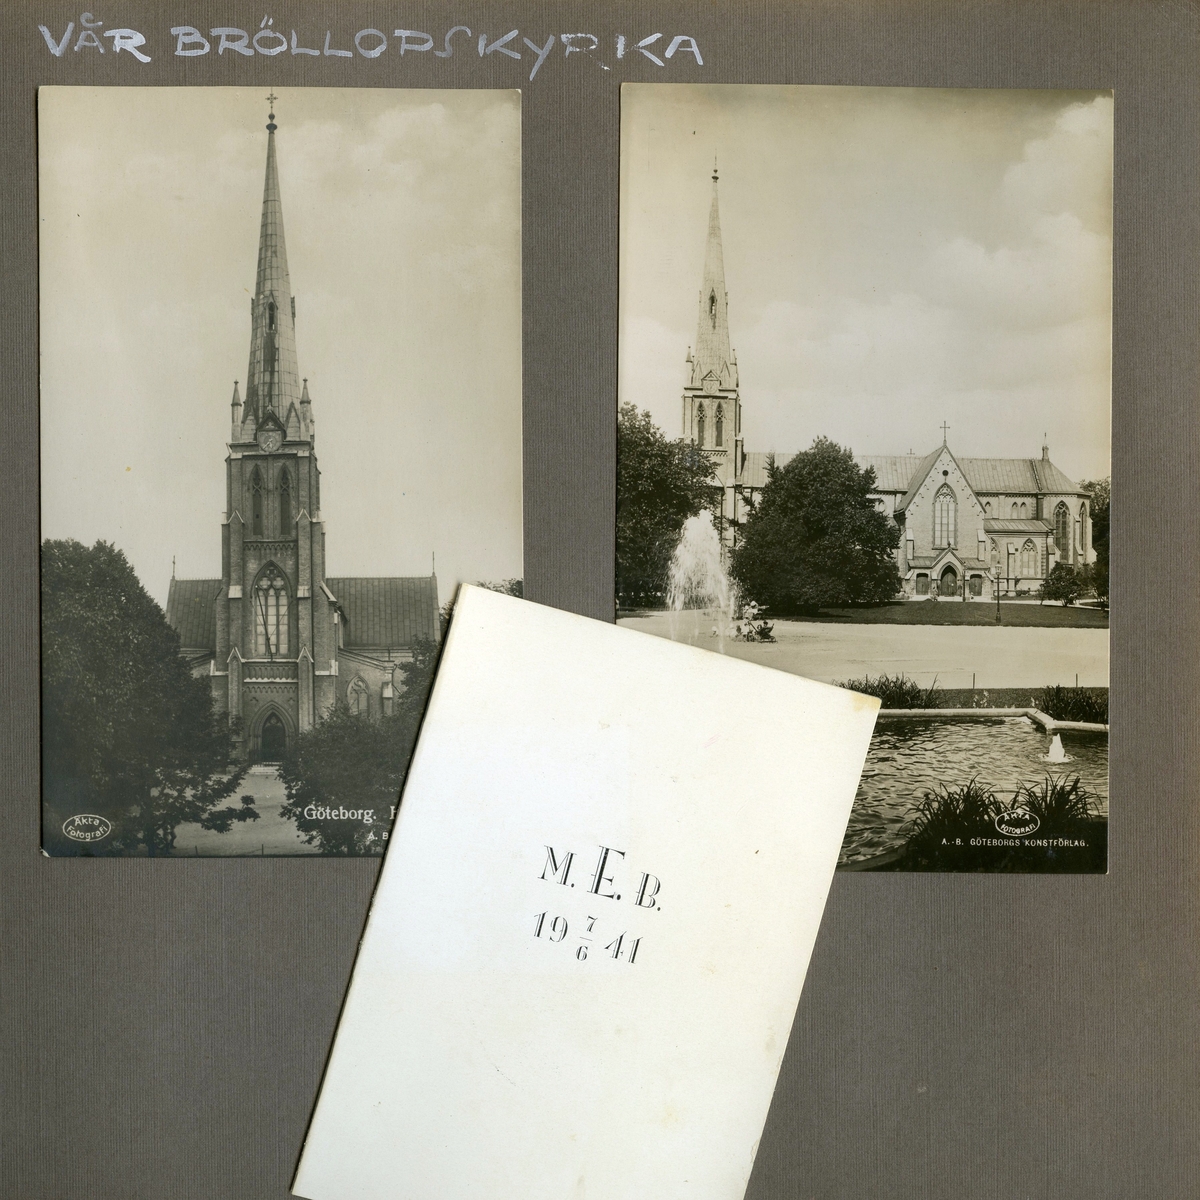 Inbjudningskort till bröllop mellan Mary Ekdahl (1920 - 1988, gift Ekman) och Björn Ekman (1913 - 1992) i Hagakyrkan i Göteborg 1941-06-07. På kortets framsida står "VÅR BRÖLLOPSKYRKA" skrivet med vit text.